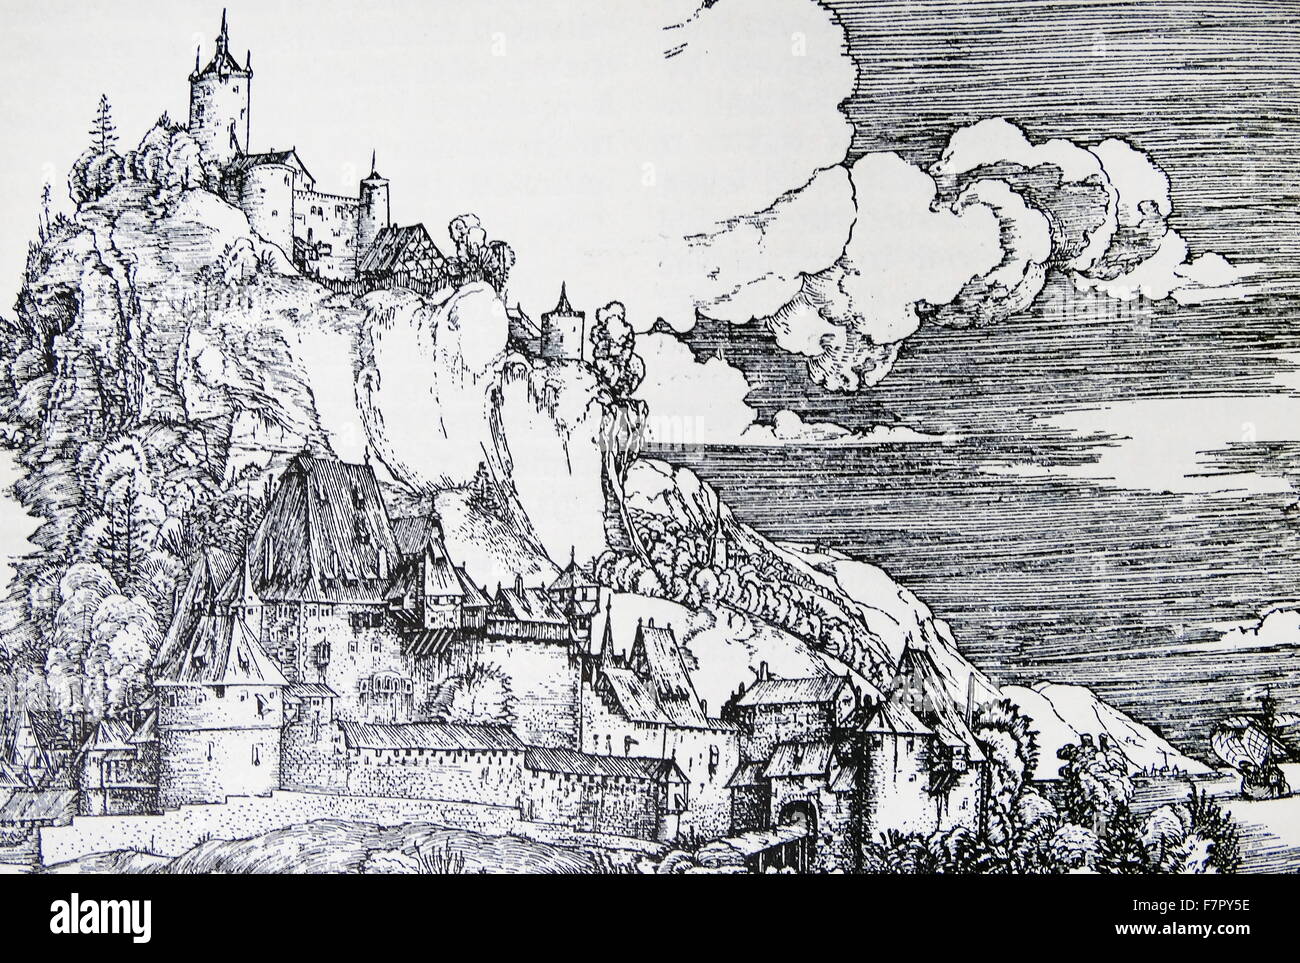 Ilustración después de Albrecht Durer copperplate grabado (1502) de Castel Segonzano Foto de stock